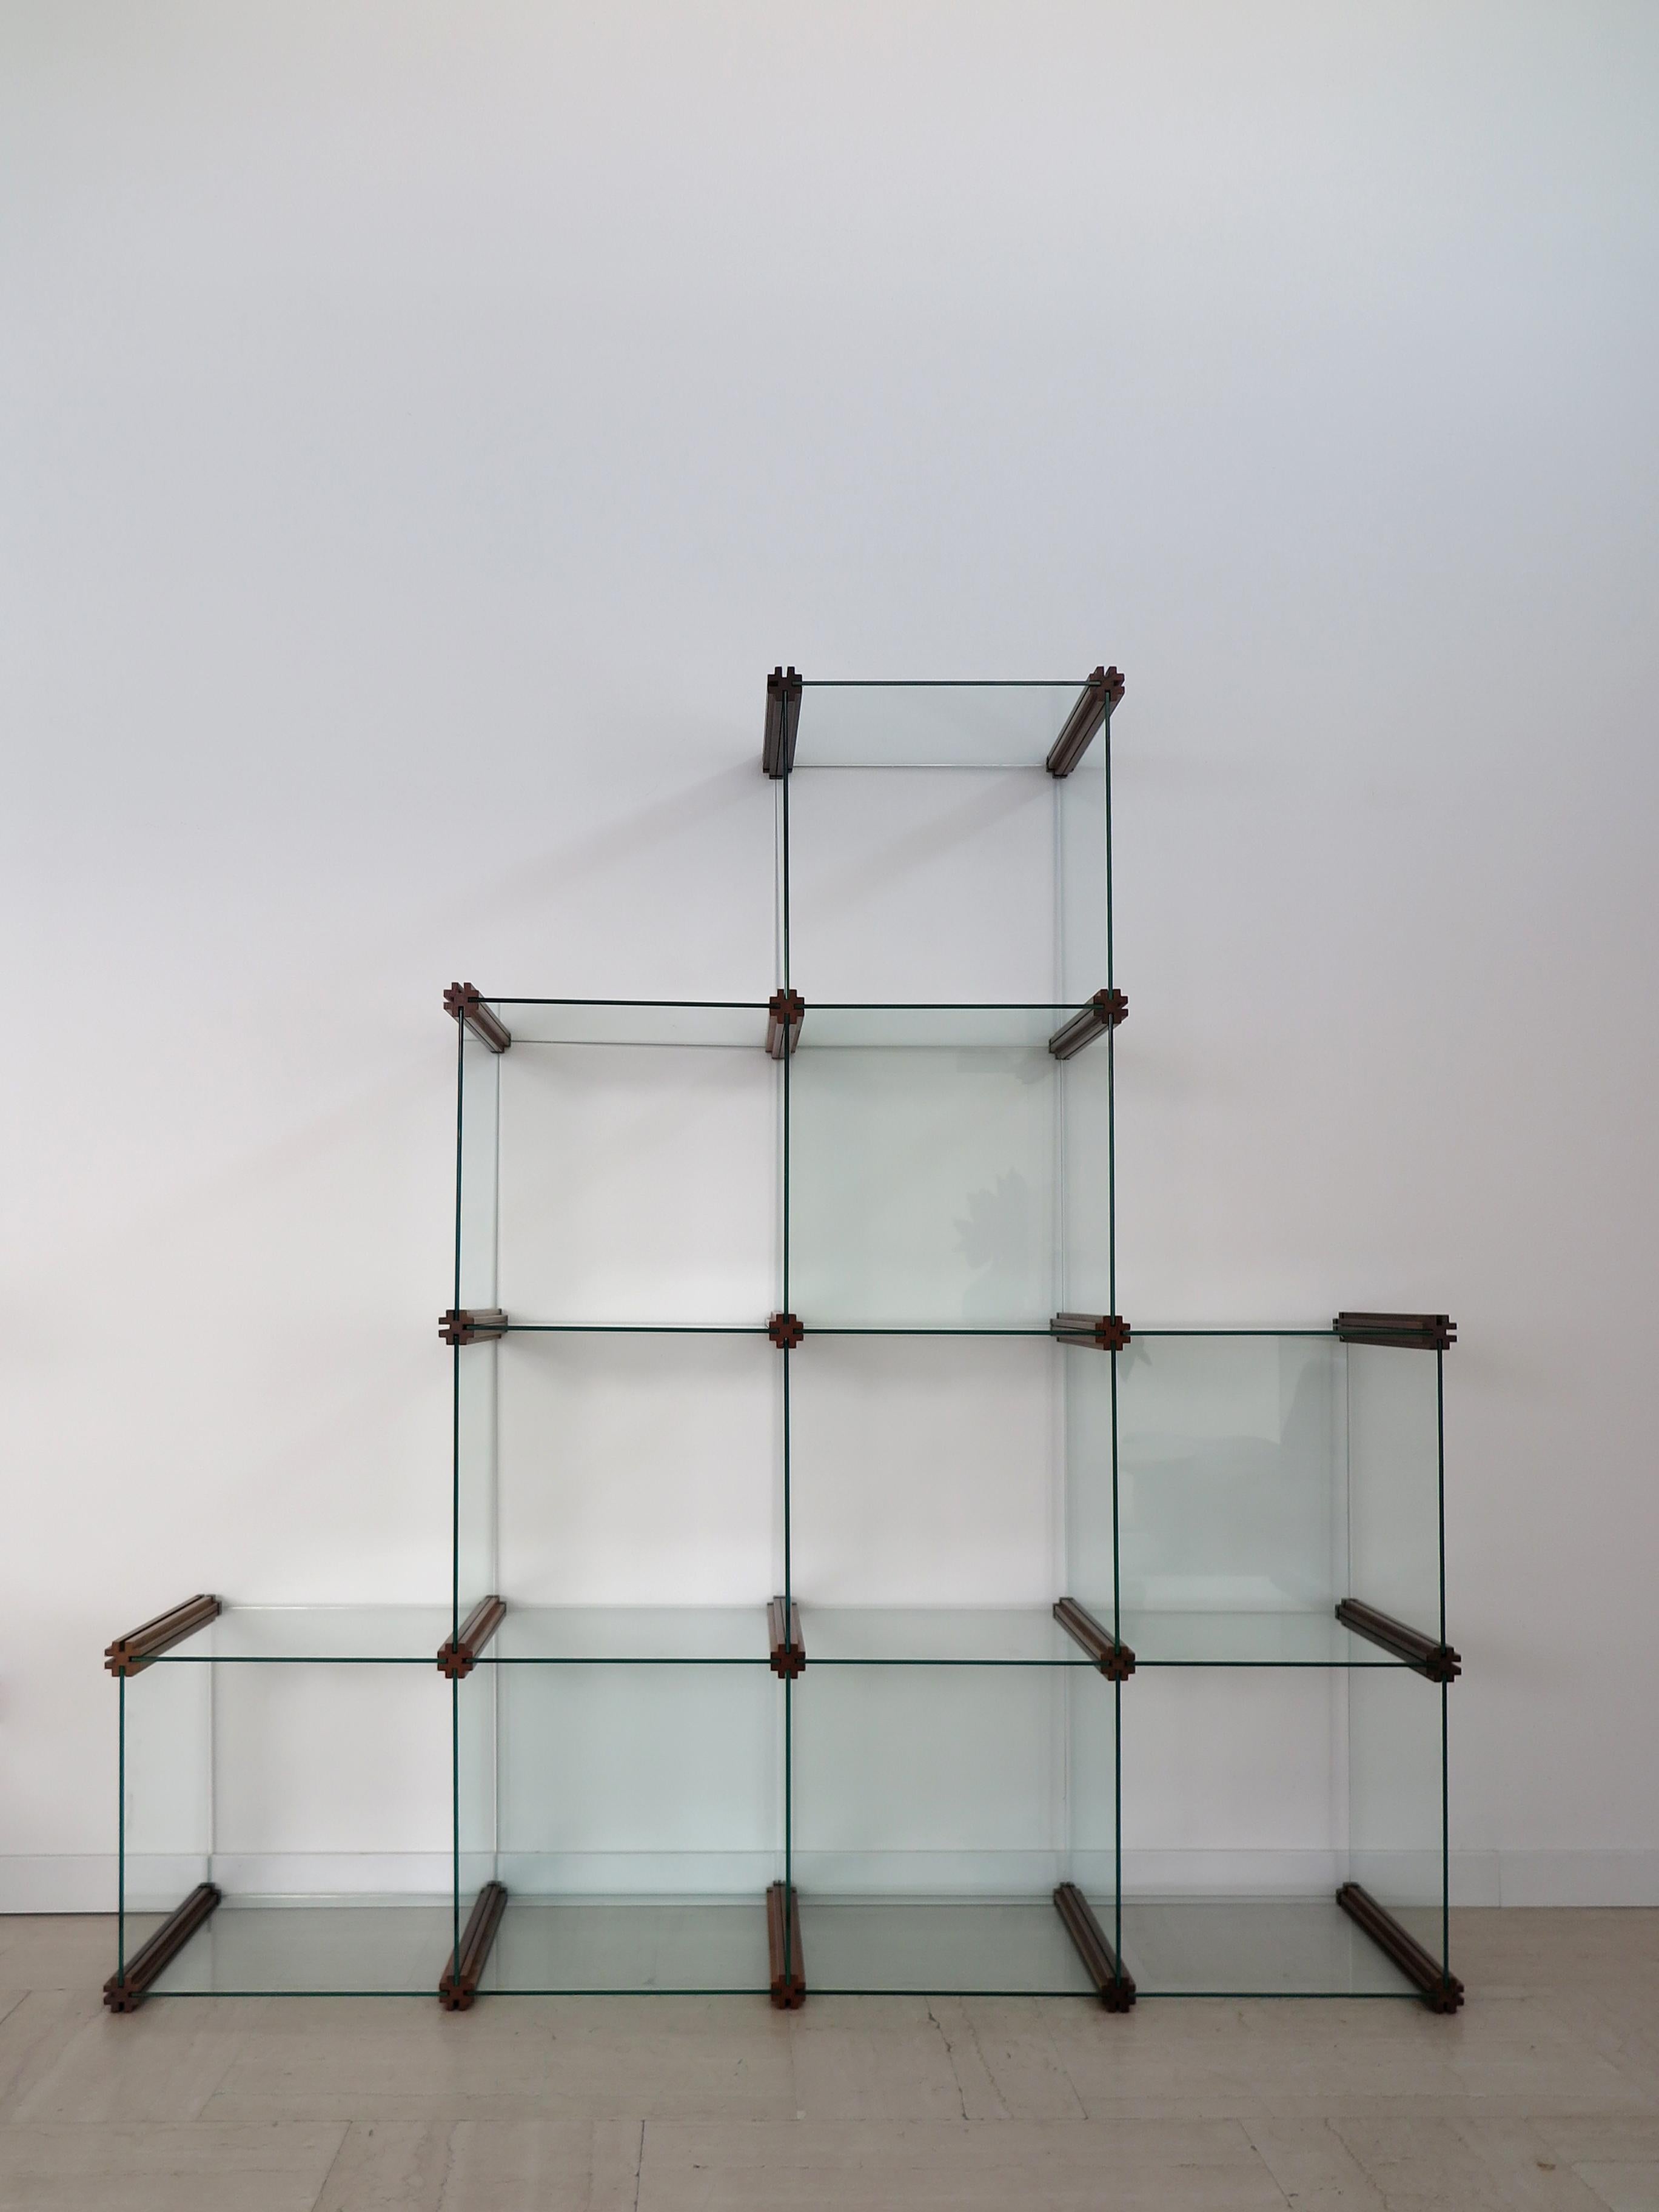 Italienisches modulares Glasregal, entworfen von Pierangelo Gallotti und hergestellt von Gallotti e Radice mit ineinandergreifenden modularen Glaselementen auf geformten Massivholzrahmen, hergestellt in Italien 1980.
Das Bücherregal besteht aus 28